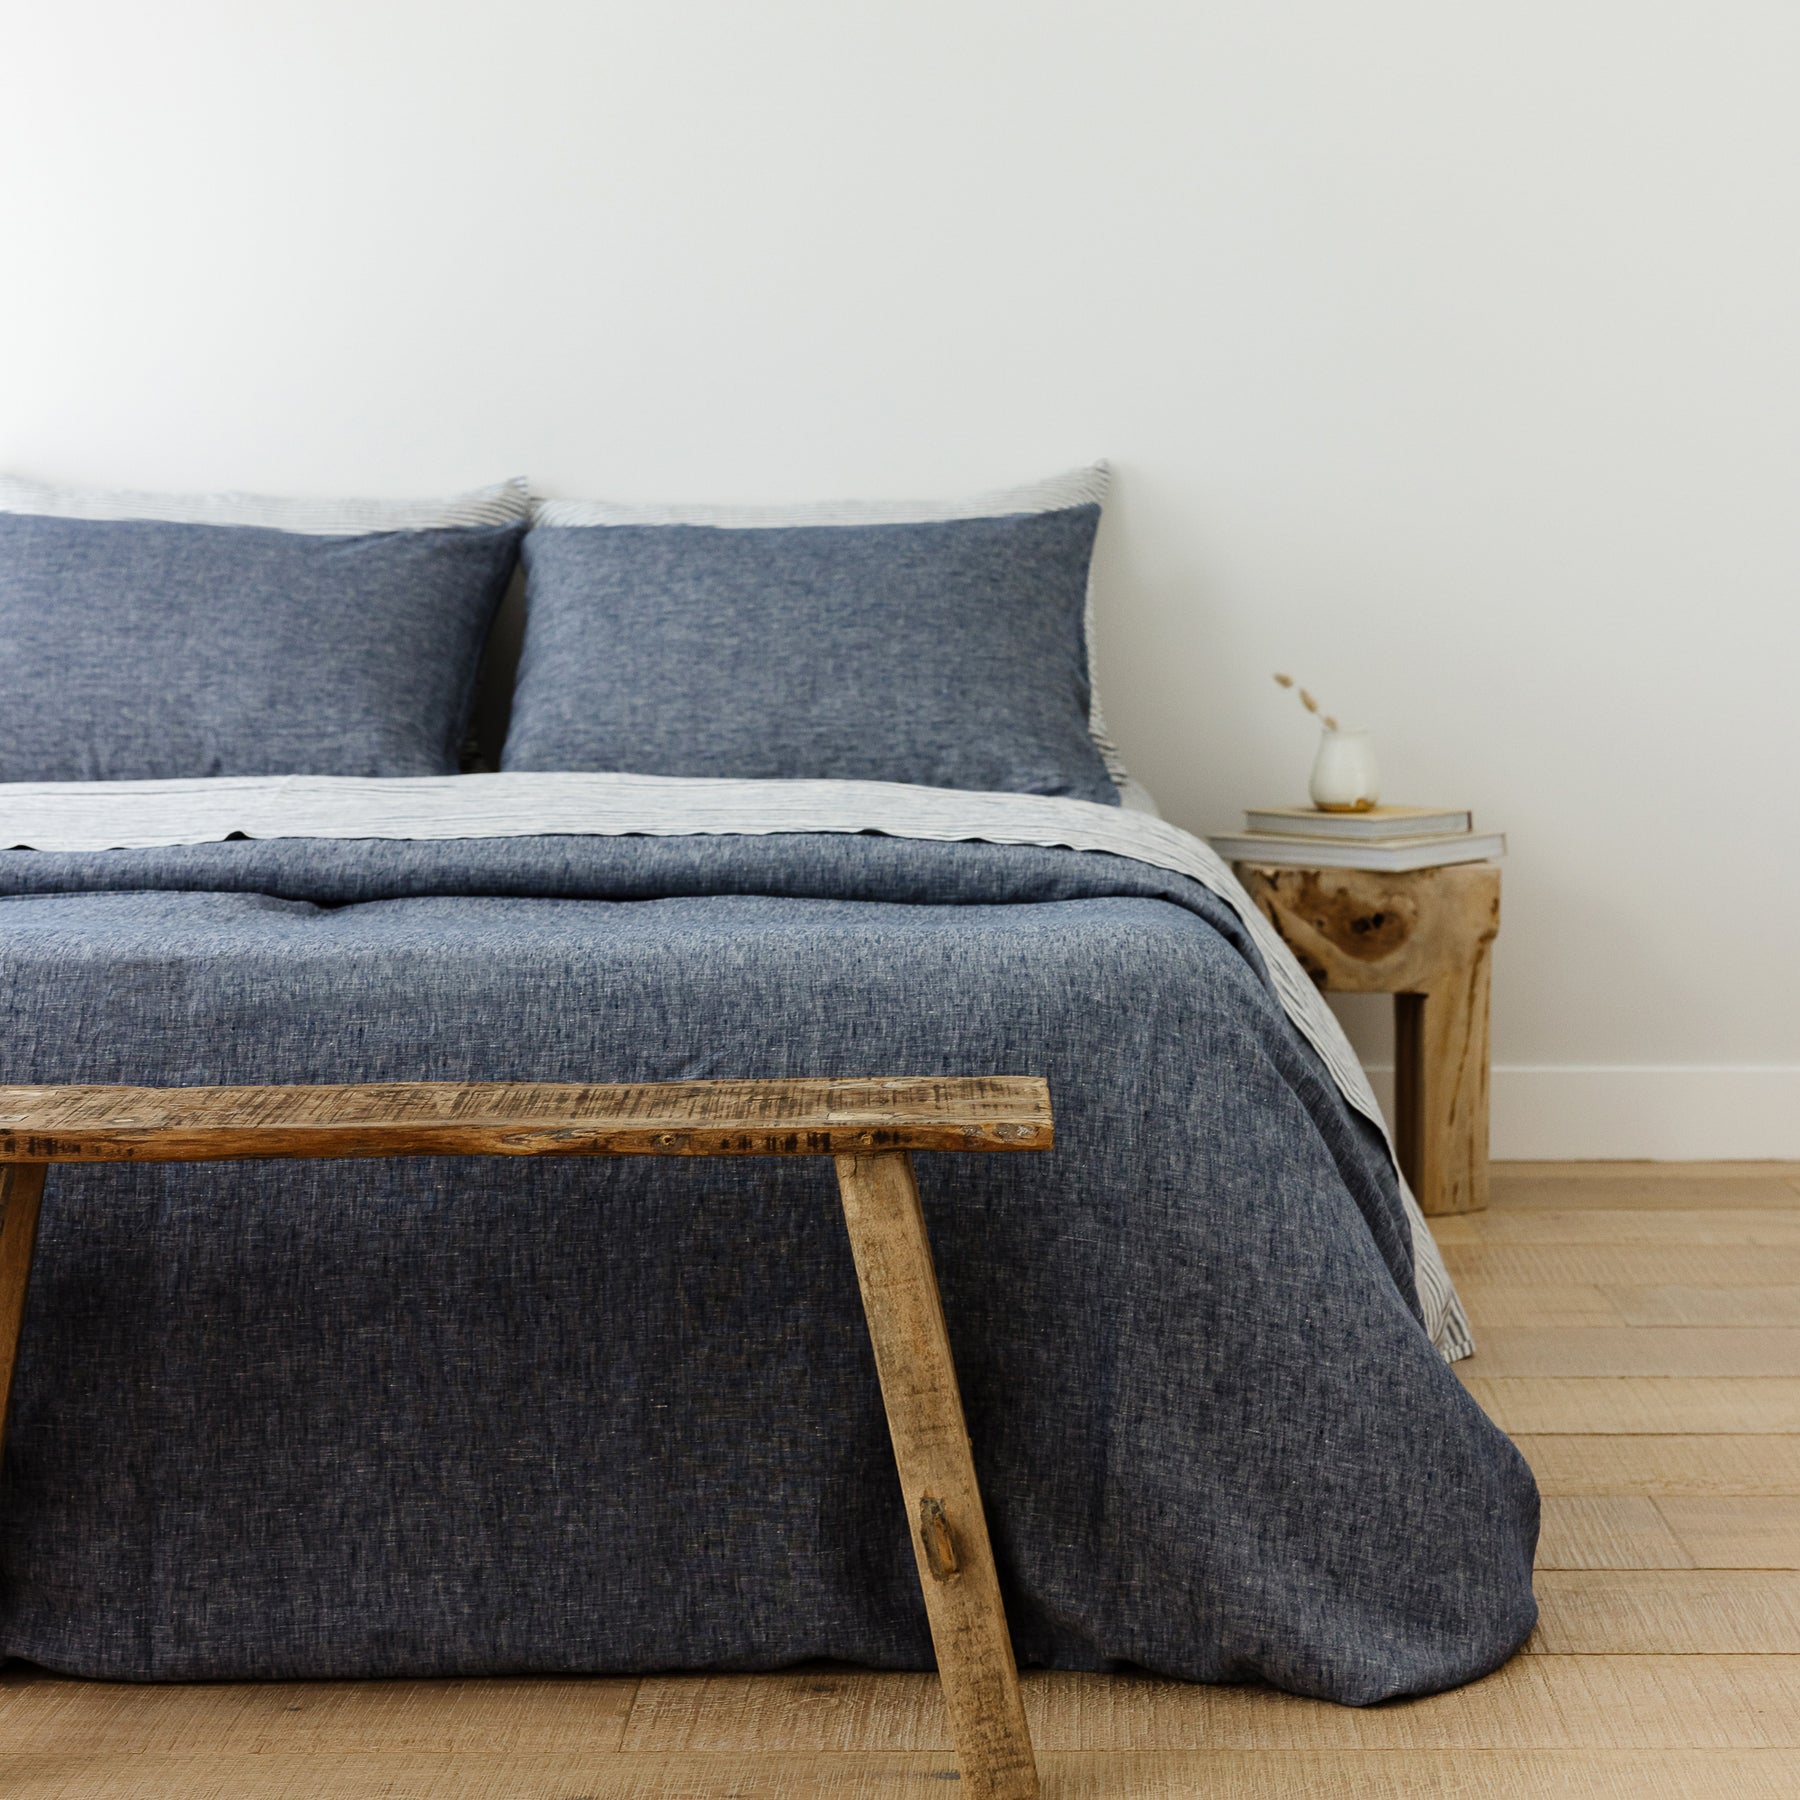 BED SHEET denim blue - ZIZI linen home textiles